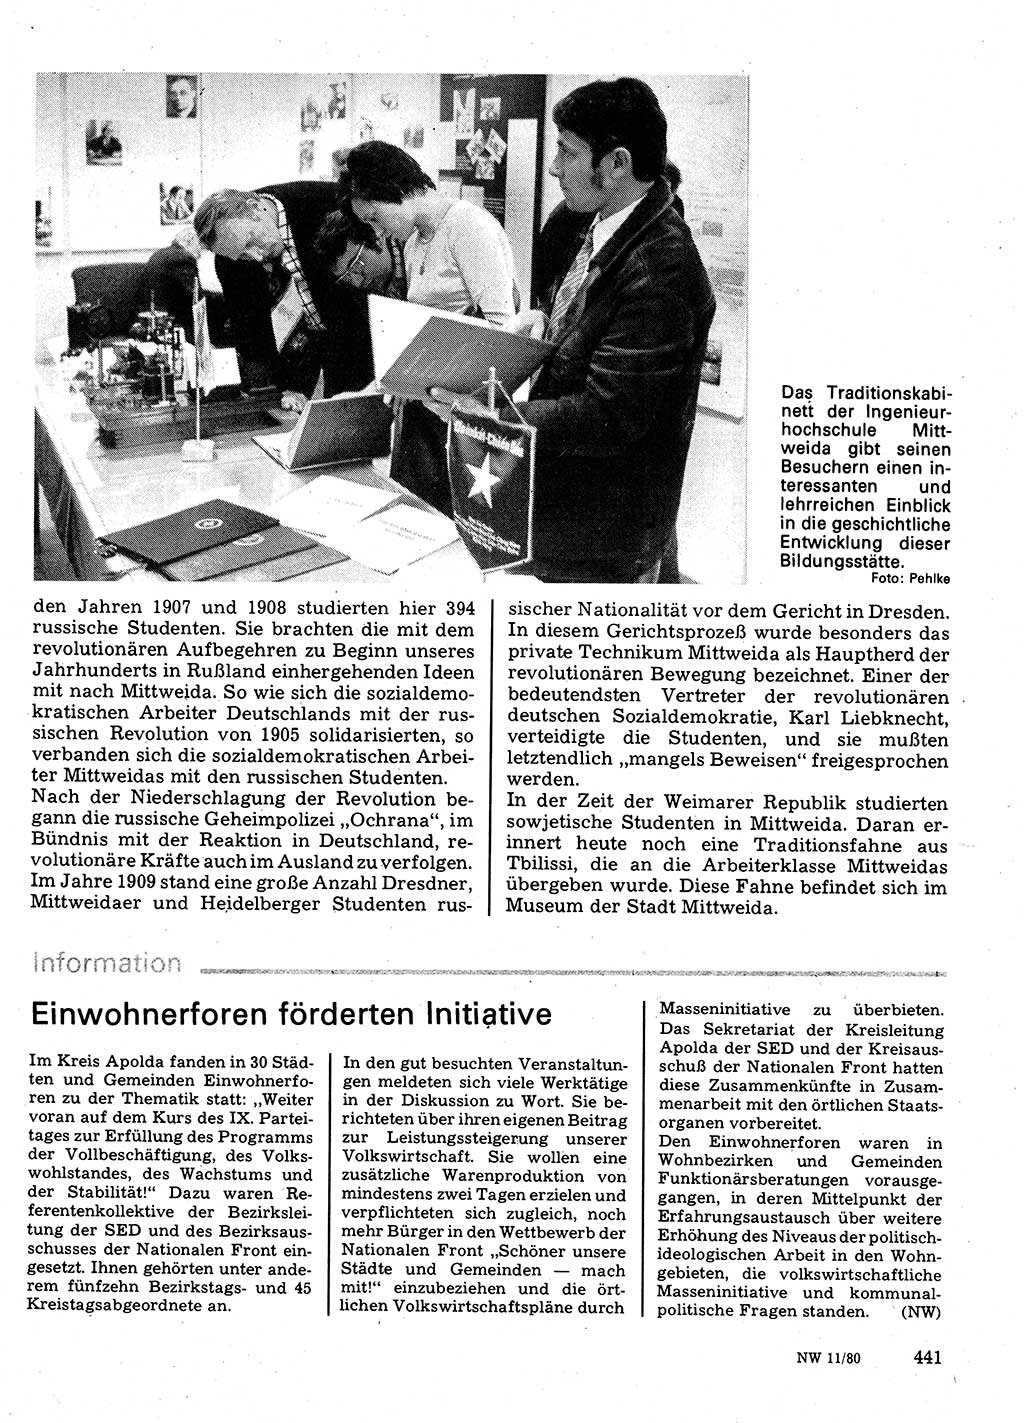 Neuer Weg (NW), Organ des Zentralkomitees (ZK) der SED (Sozialistische Einheitspartei Deutschlands) für Fragen des Parteilebens, 35. Jahrgang [Deutsche Demokratische Republik (DDR)] 1980, Seite 441 (NW ZK SED DDR 1980, S. 441)